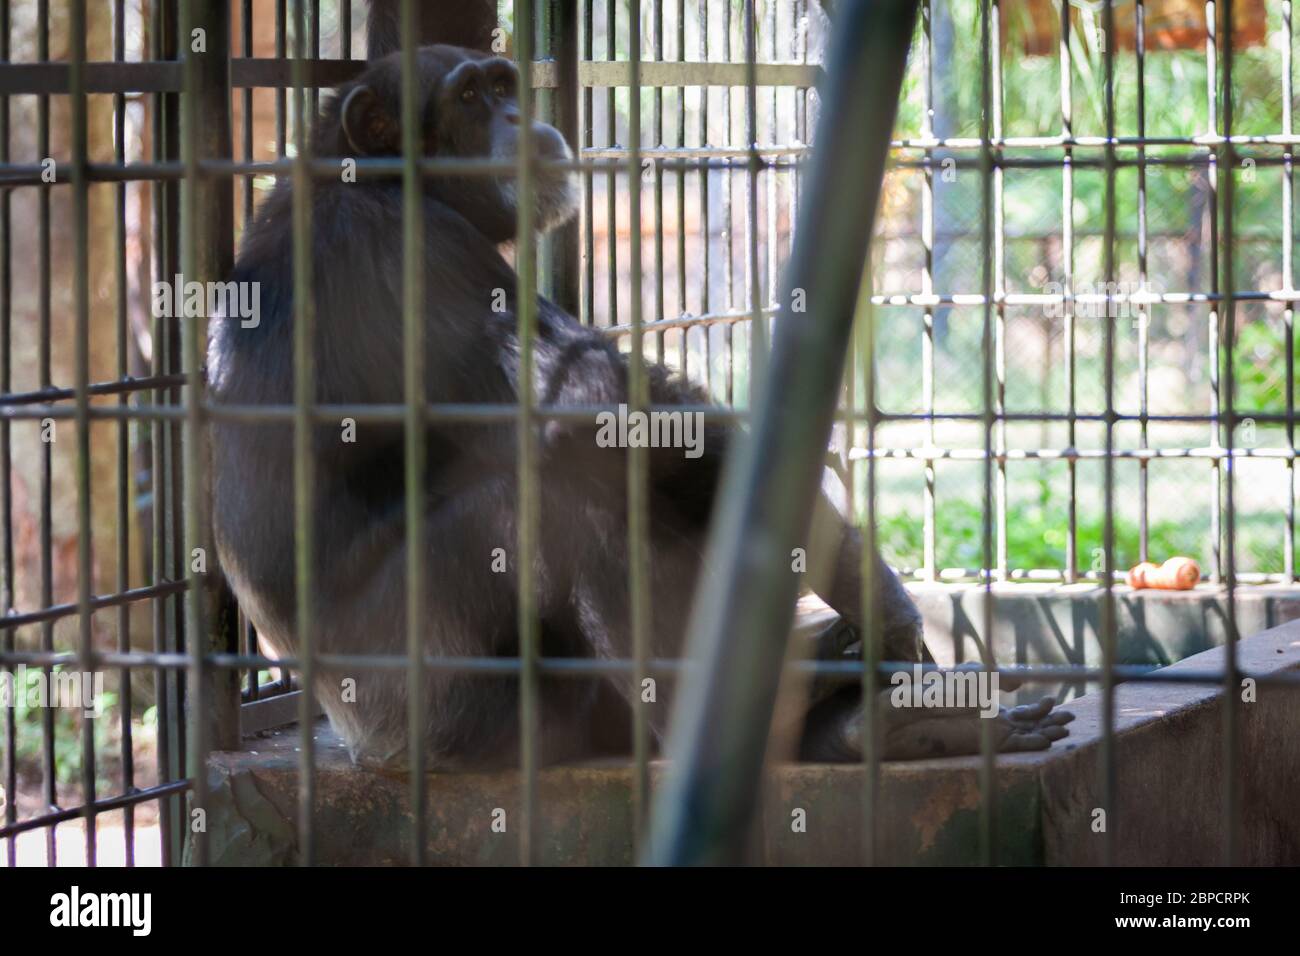 Asunción, Paraguay. 26 de abril de 2008. Chimpancé común (Pan troglodytes) se encuentra en hormigón detrás de las barras, dentro de su recinto en el Zoológico de Asunción, Paraguay. Foto de stock